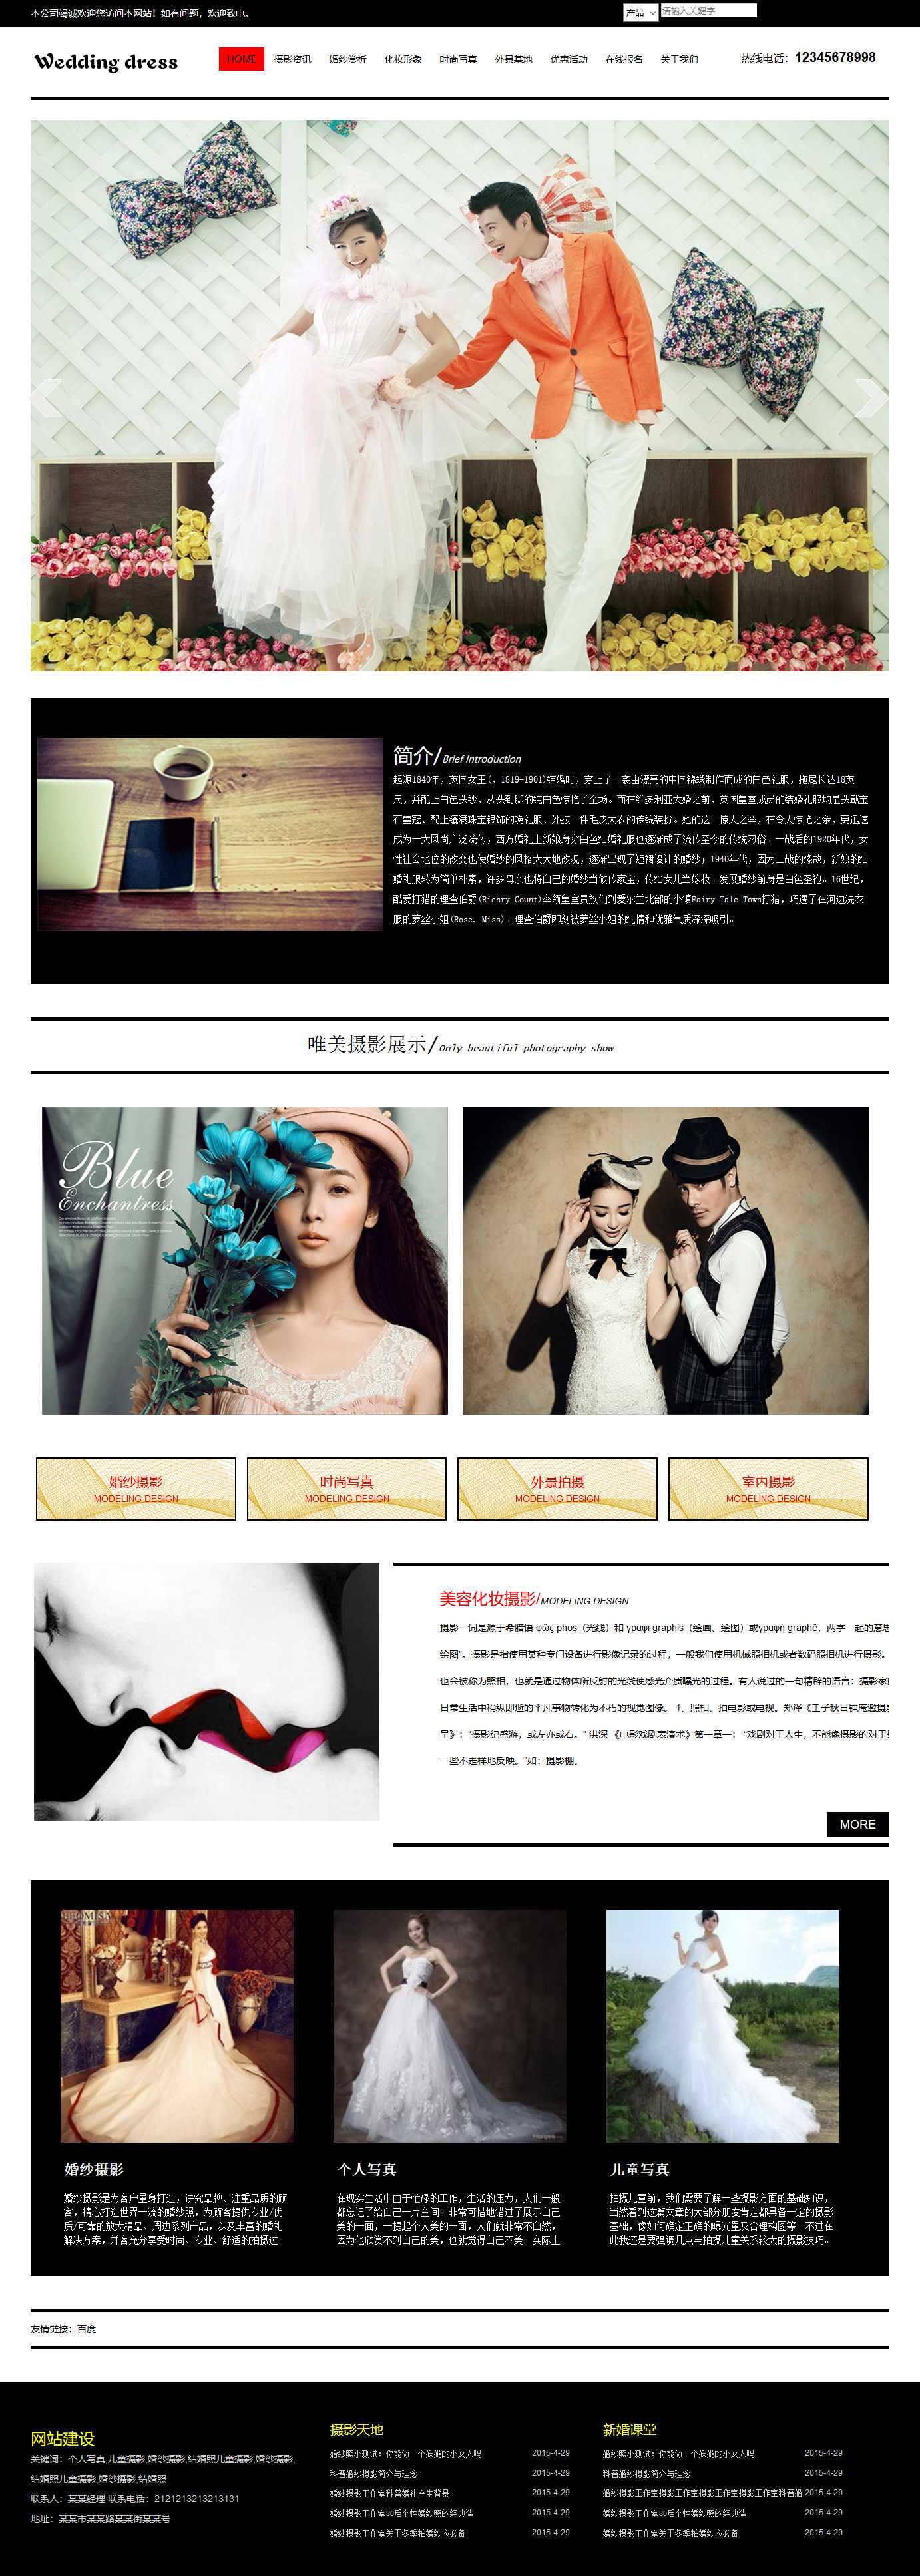 婚纱摄影,婚纱照,个人写真,儿童摄影网站首页效果图